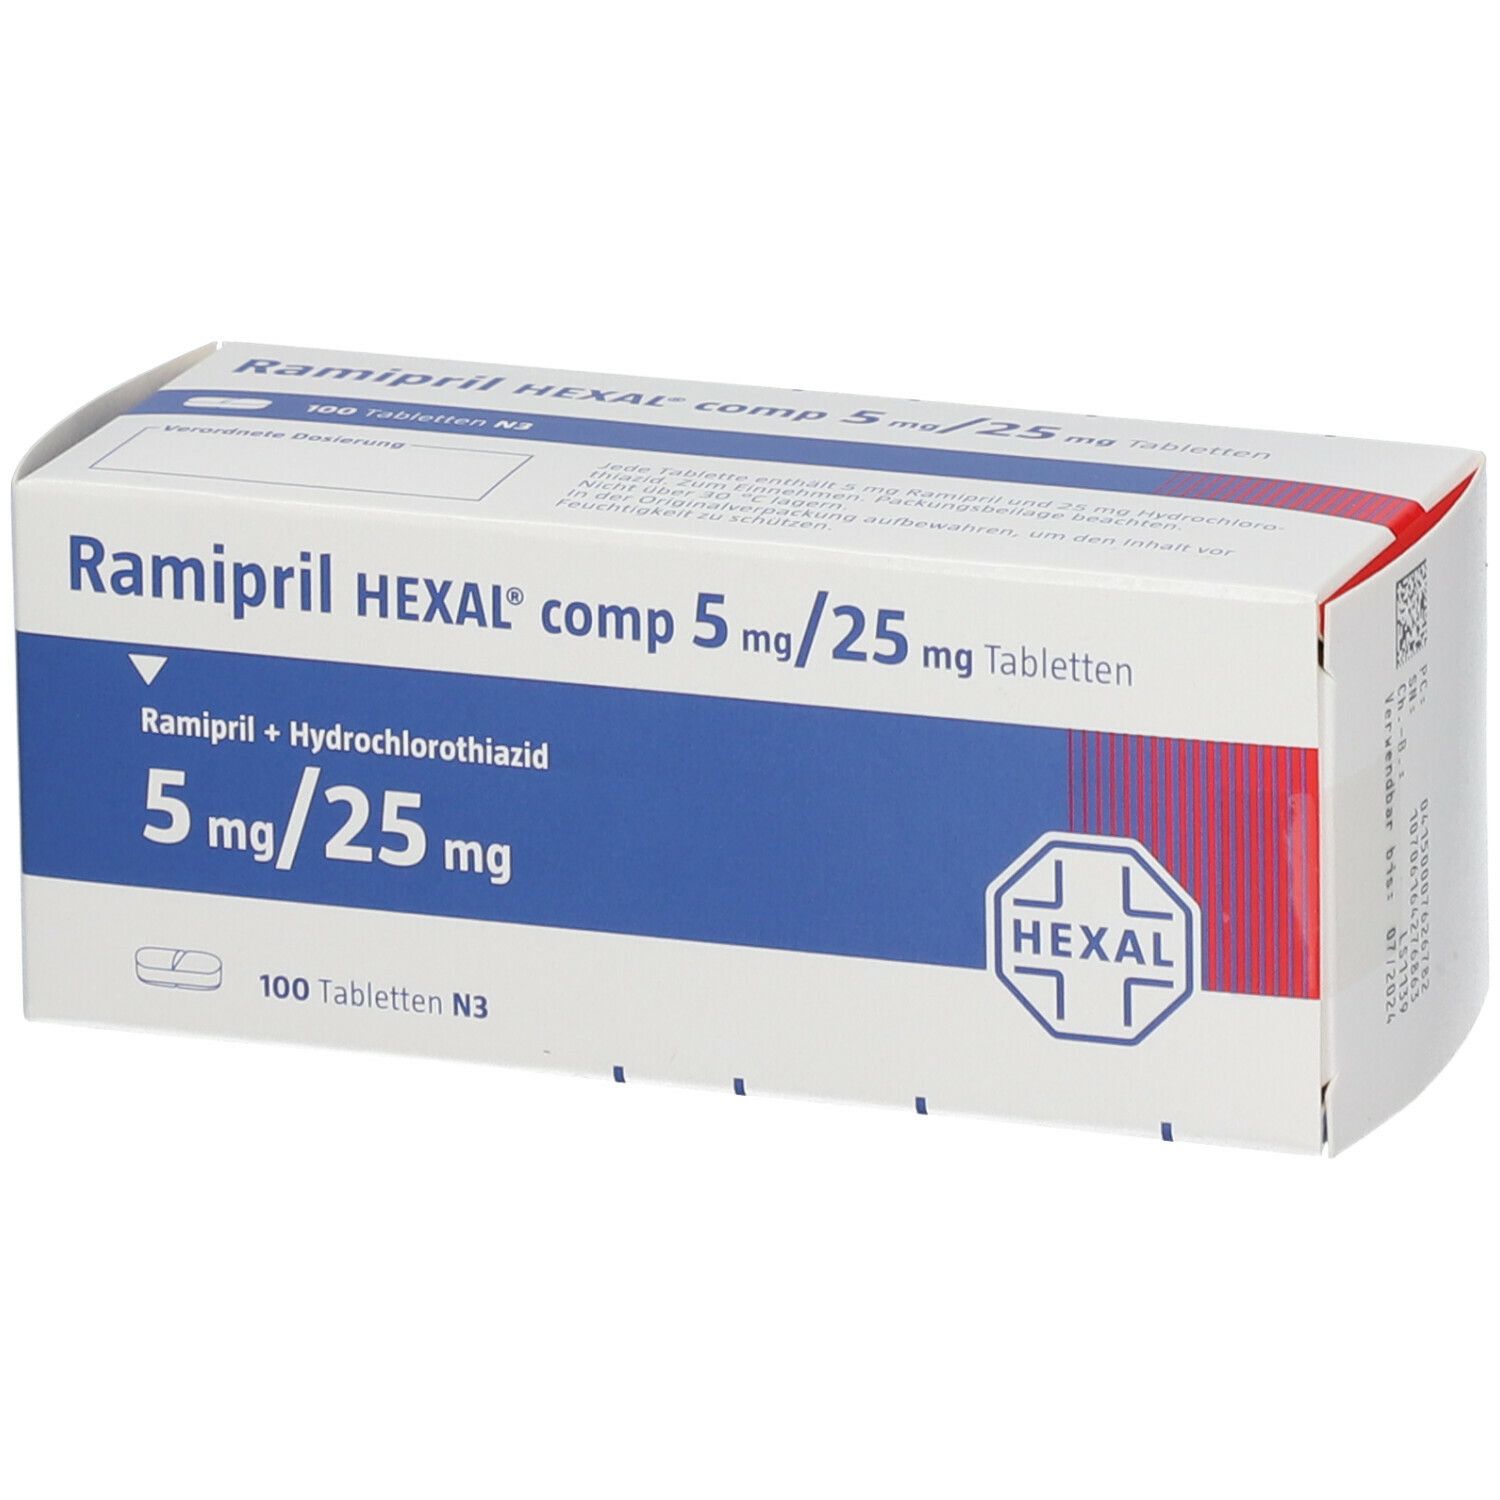 Ramipril HEXAL® comp 5 mg/25 mg